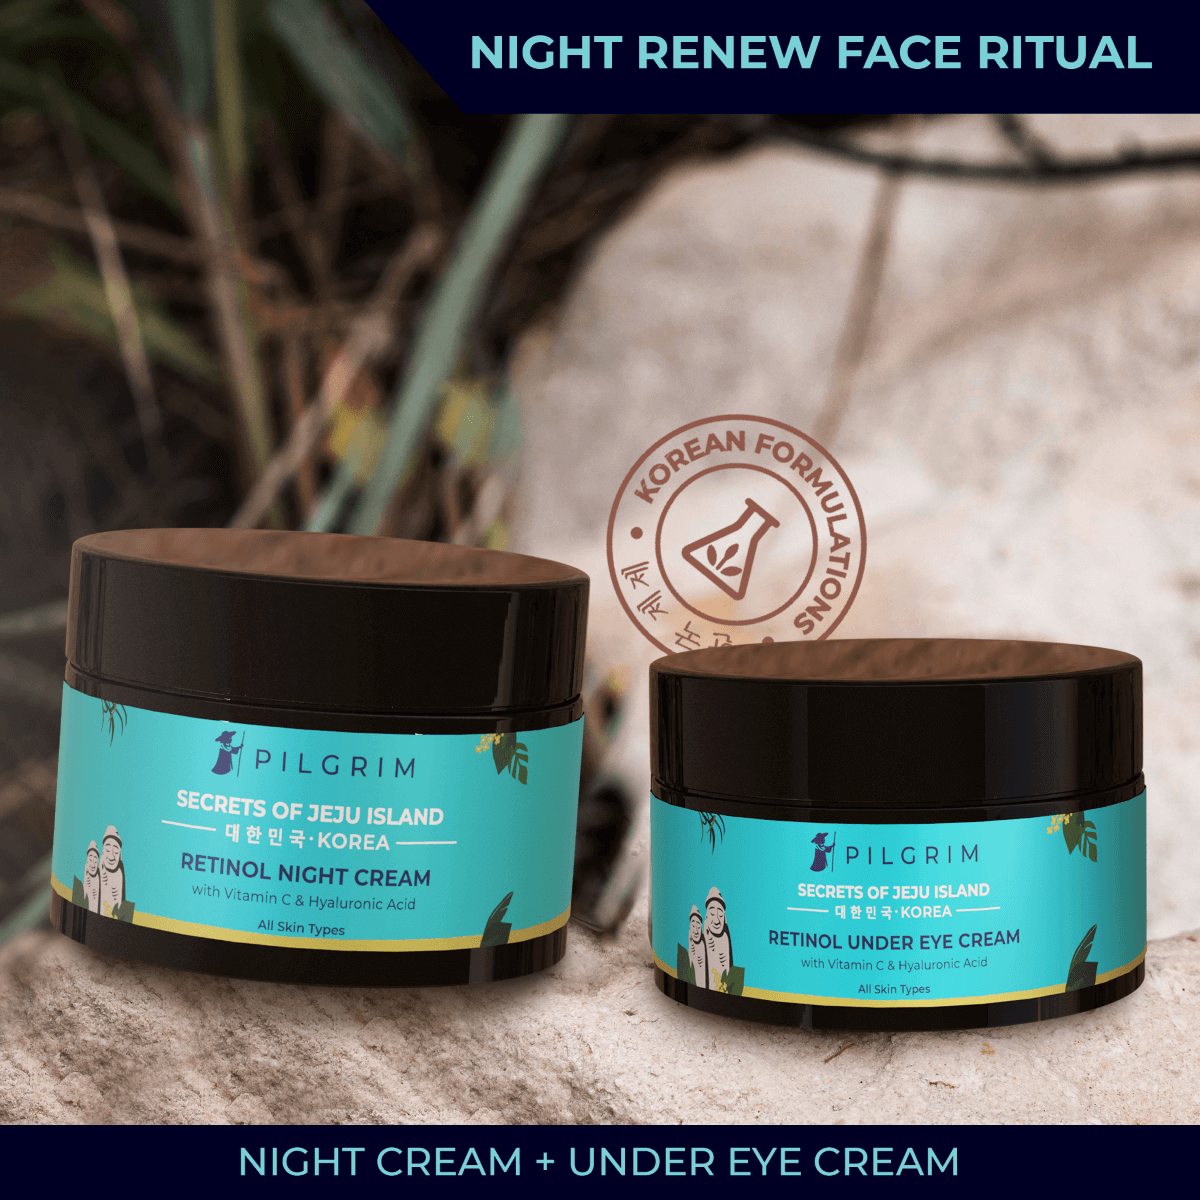 Jeju Night Renew Face Ritual